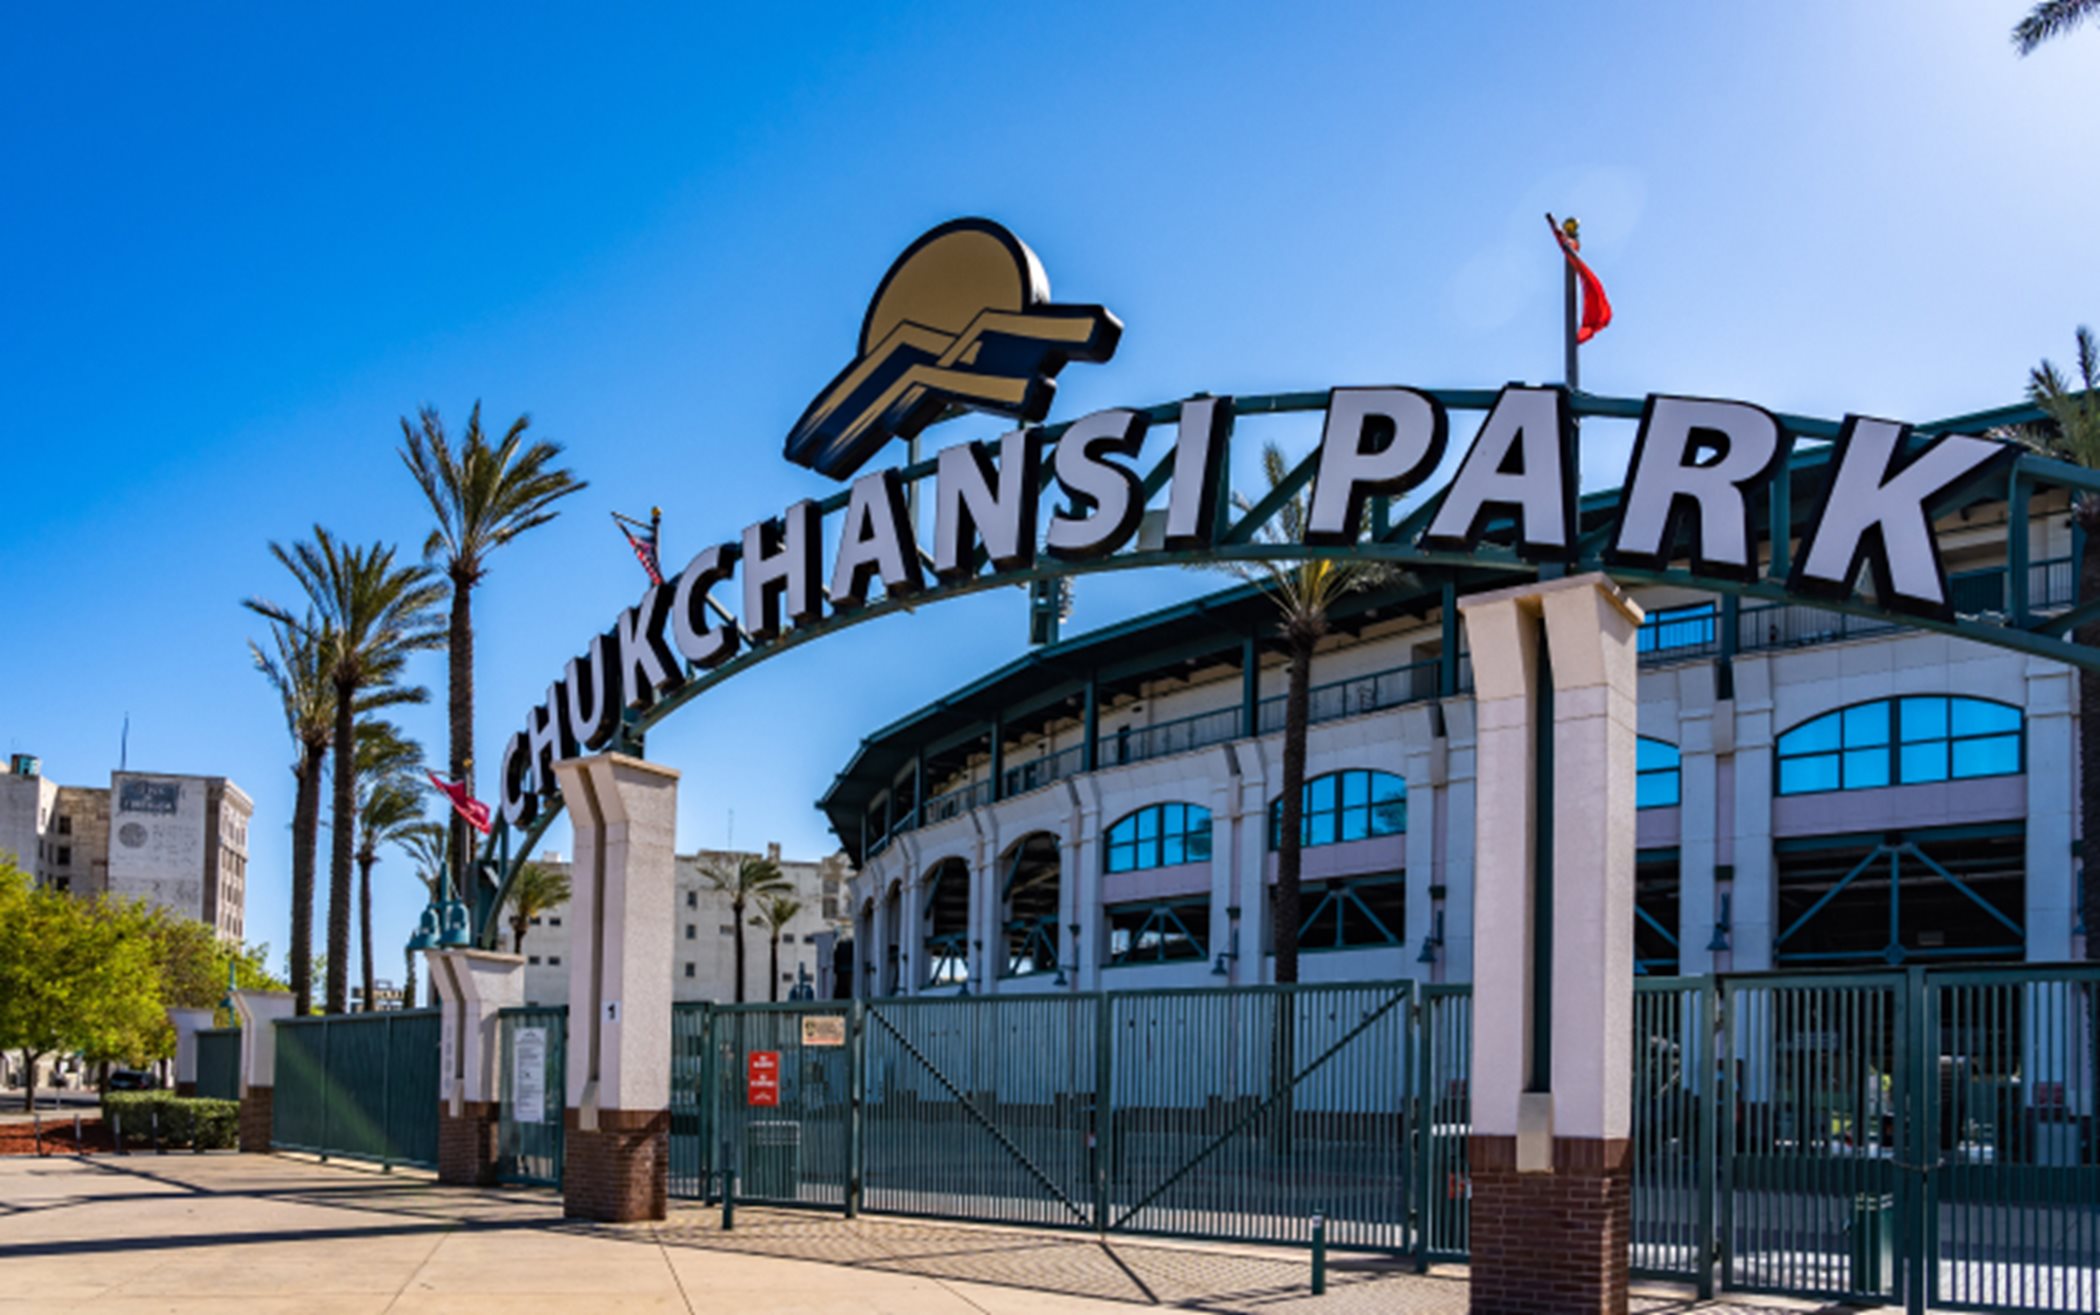 Fresno Chuckchansi Park Entrance Sign